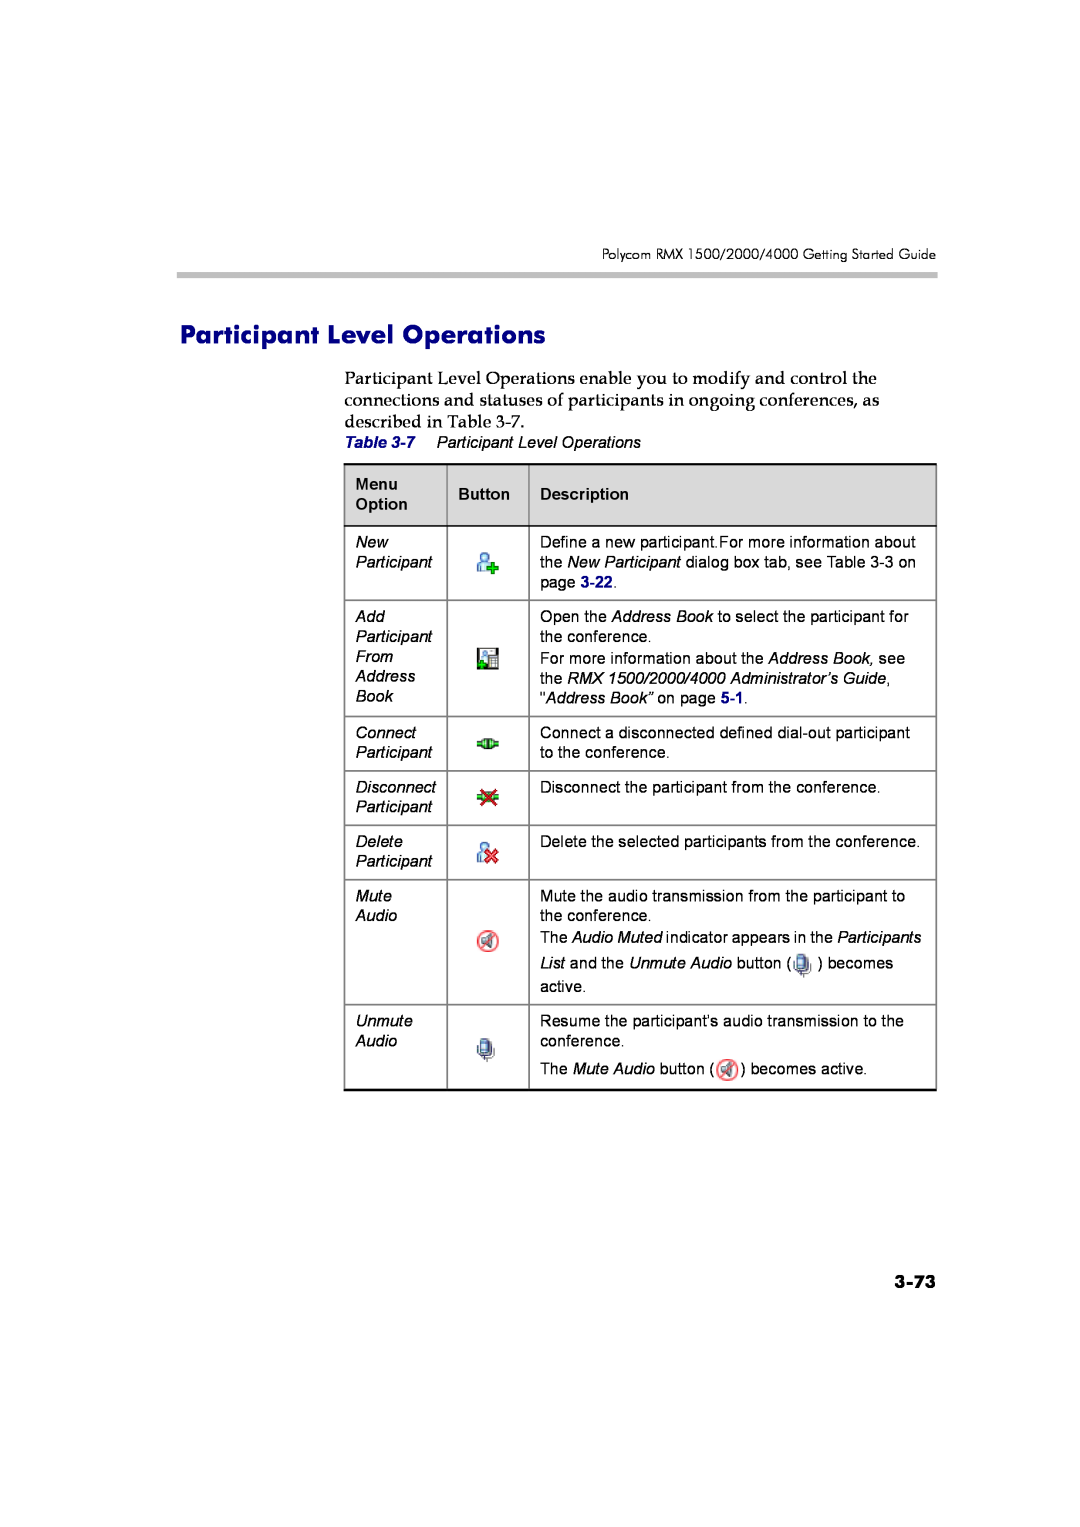 Polycom DOC2560B manual Participant Level Operations, 3-73, Menu, Button, Description, Option 